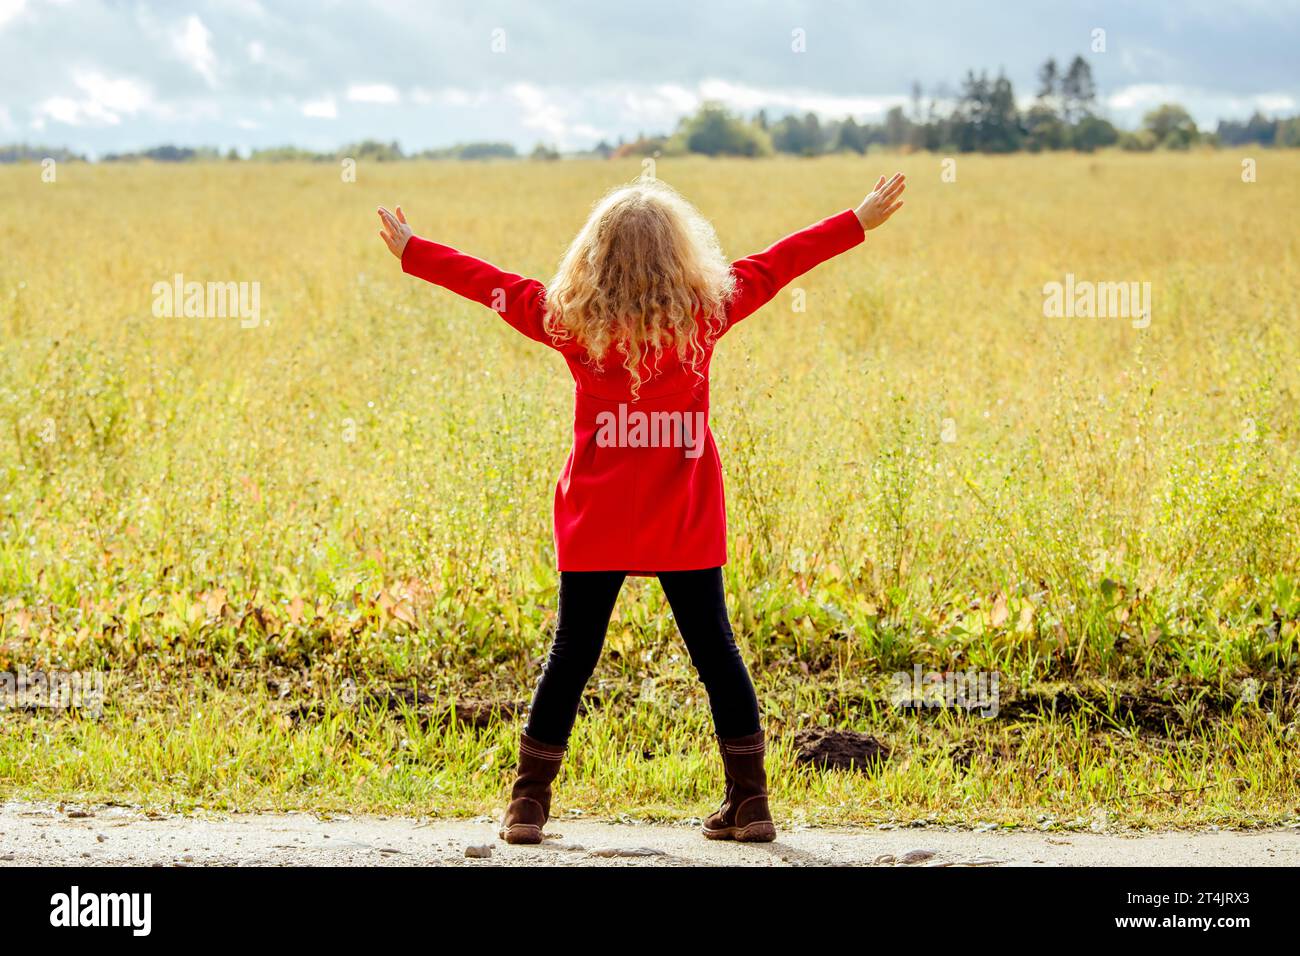 Rückansicht eines 8-jährigen Mädchens mit rotem Mantel, lockigen blonden Haaren, stehend auf einer Wiese, wunderschöner Blick auf die Natur im Freien. Stockfoto